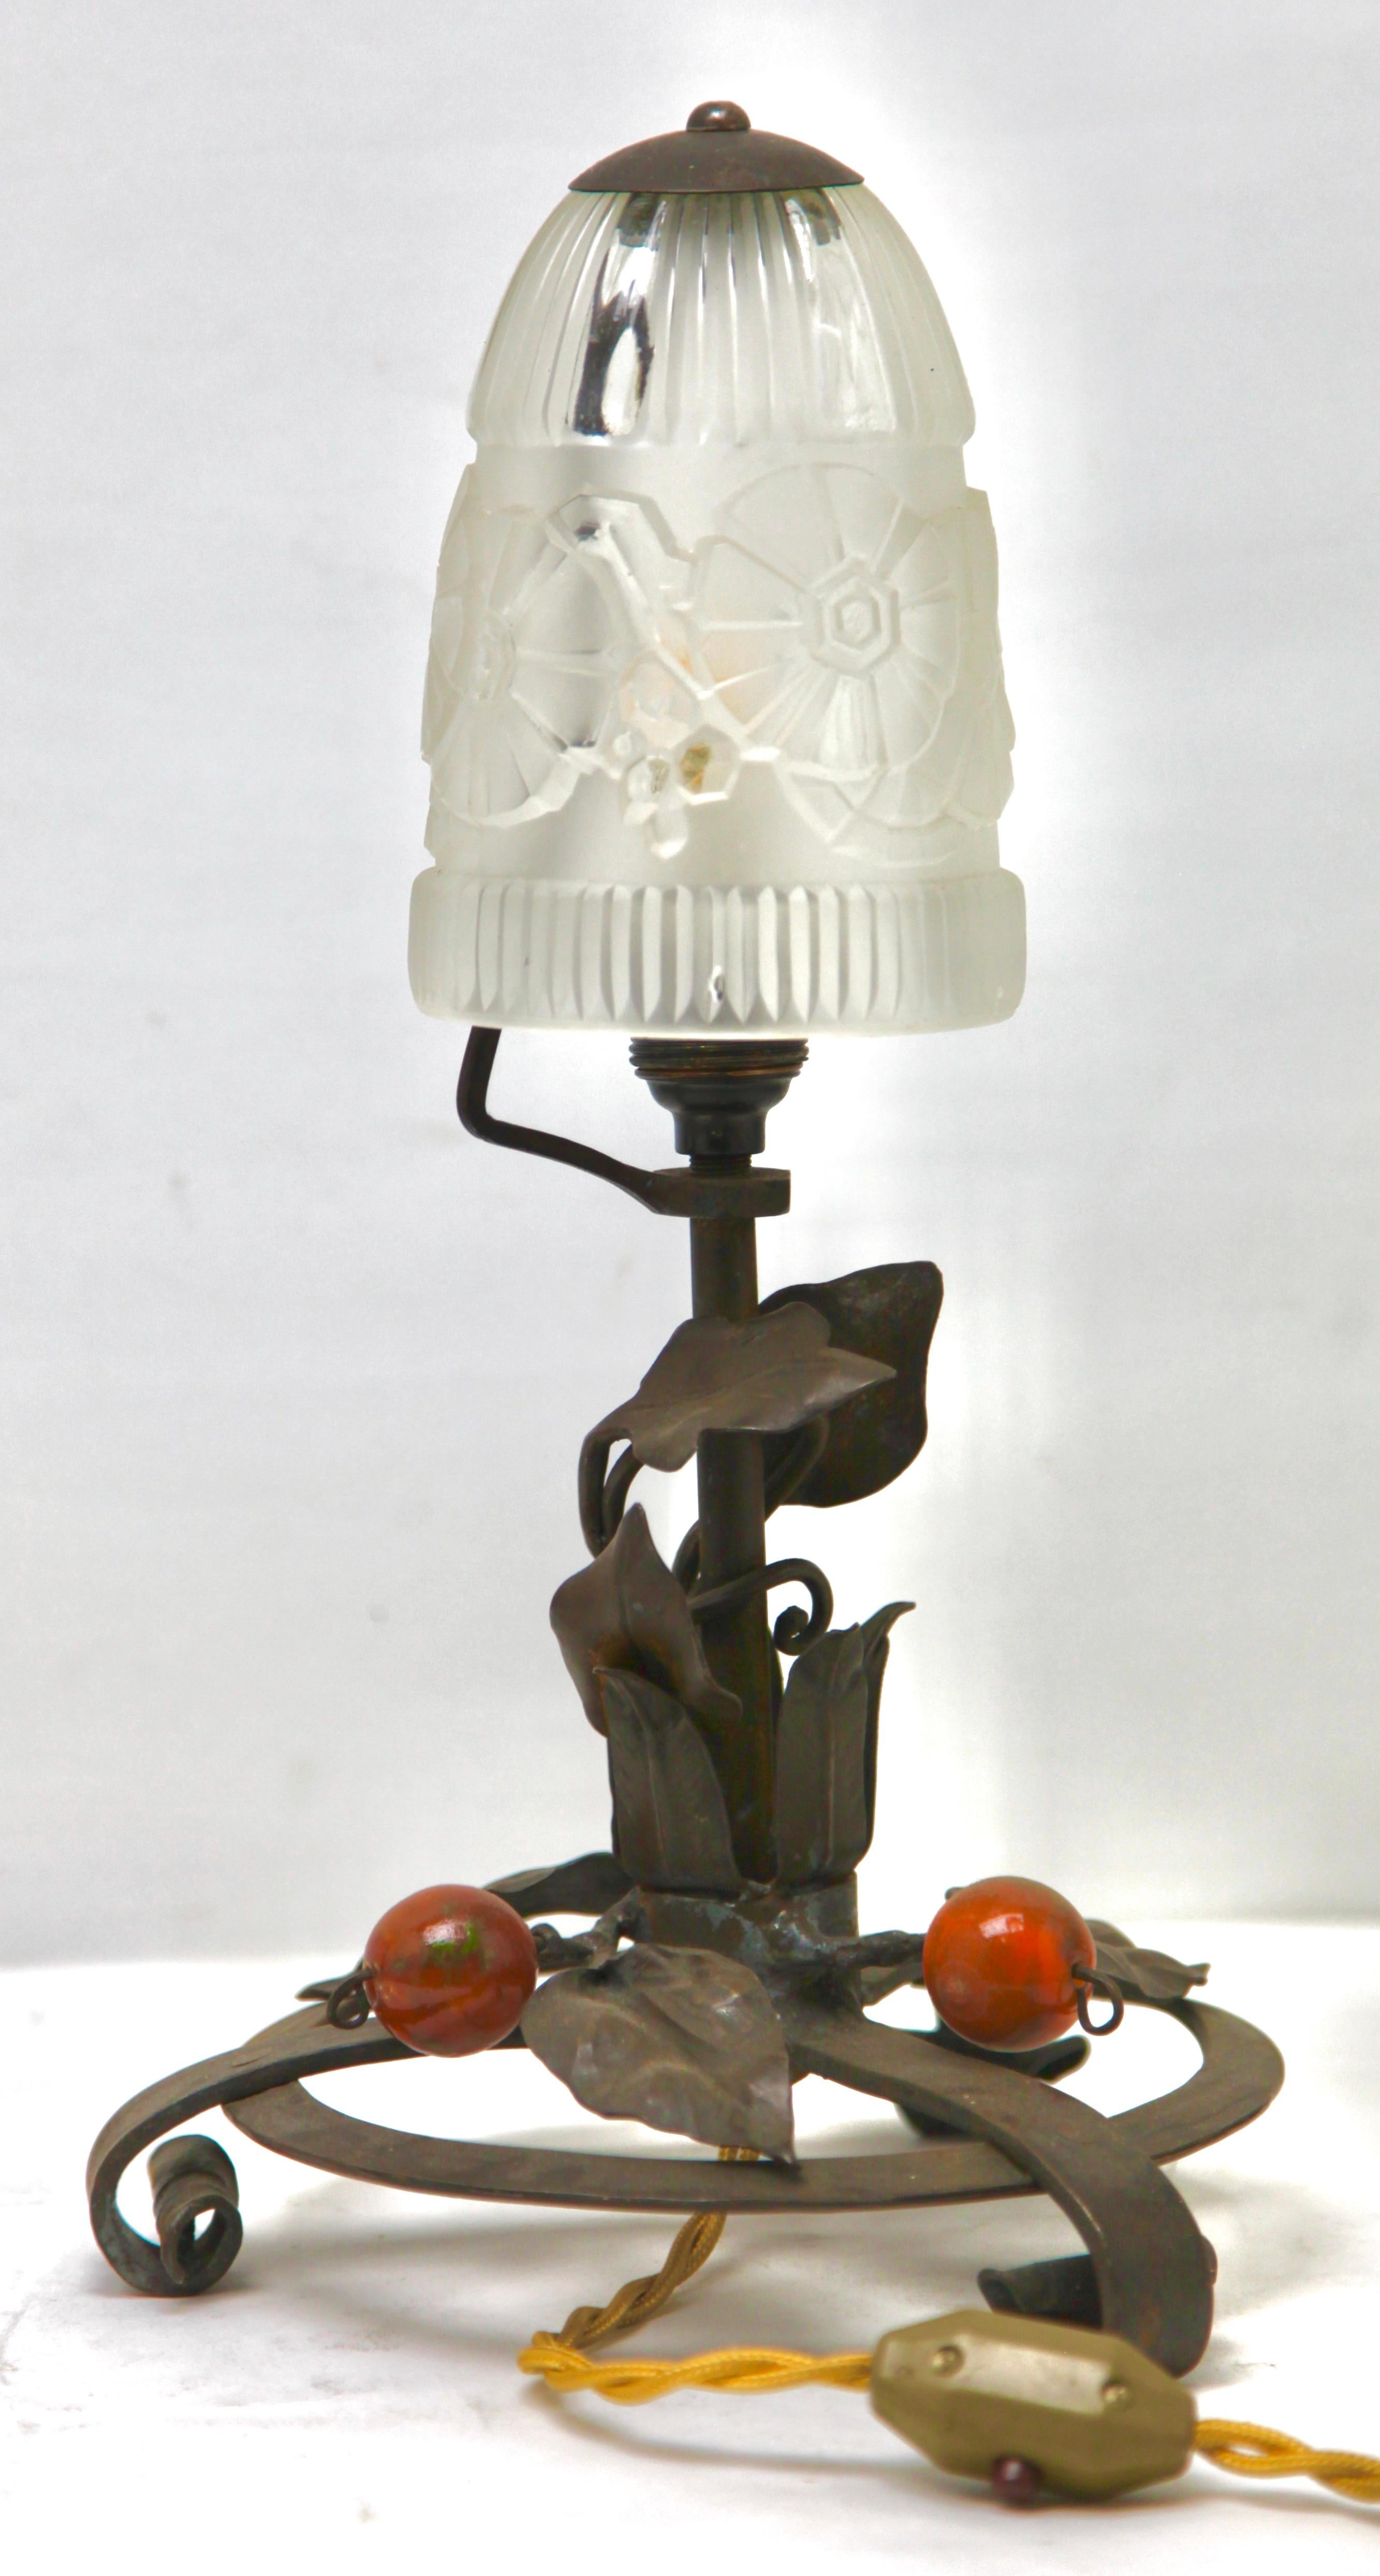 Die 1920er Jahre, Frankreich
Eine wunderbare französische Jugendstillampe. Die Ständer sind handgefertigt aus Schmiedeeisen mit schwarzer Patina und mit einem floralen Muster gehämmert. Die Metallarbeiten sind von hervorragender Qualität.
Gekrönt